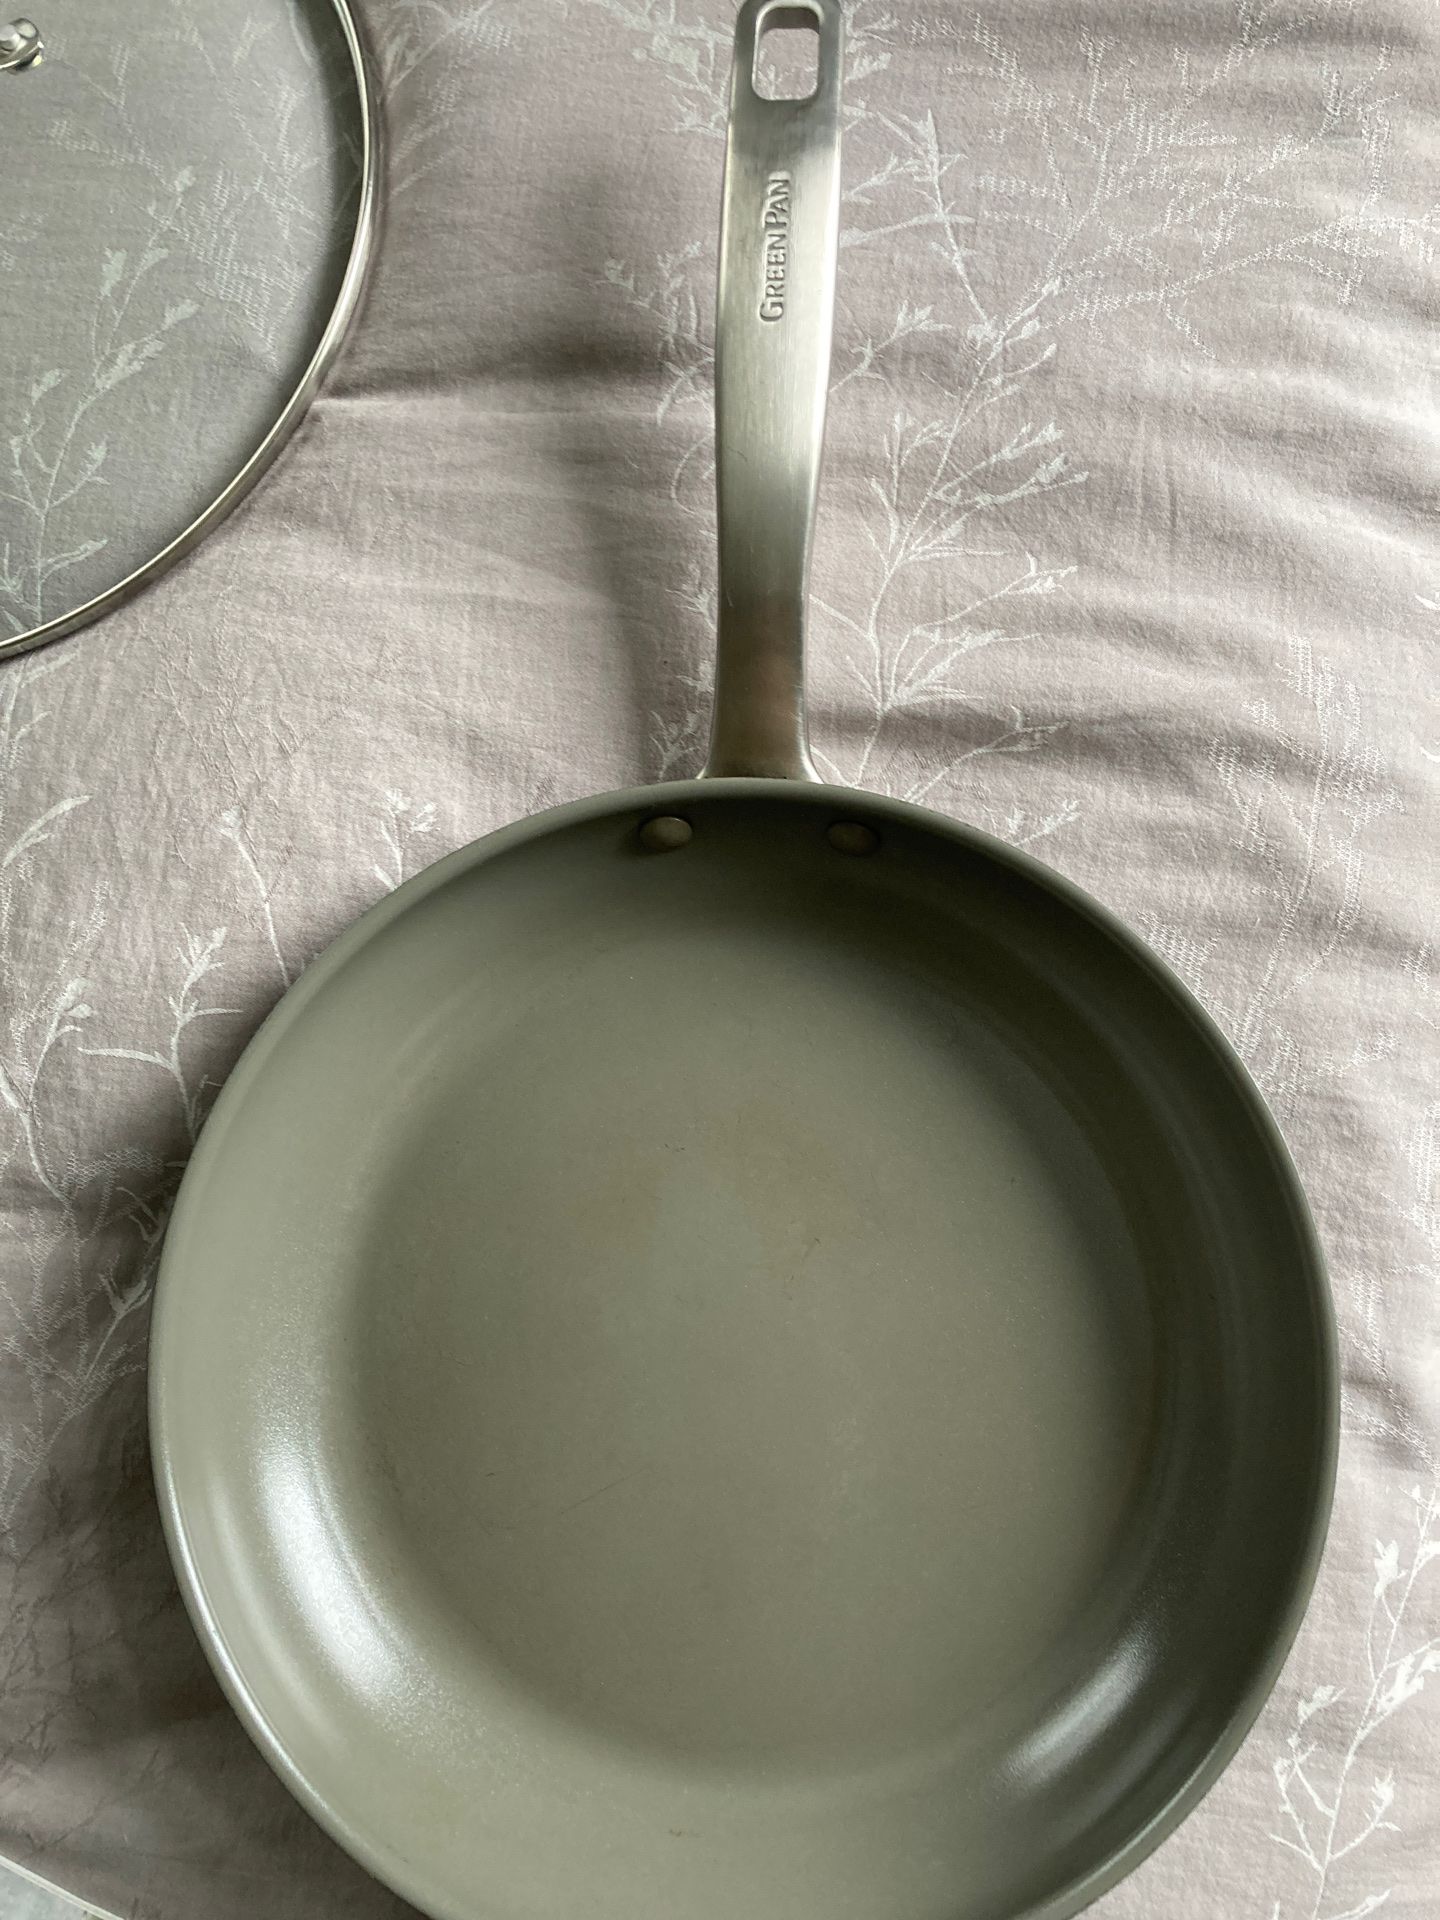 Green Pan Nonstick Frying Pan